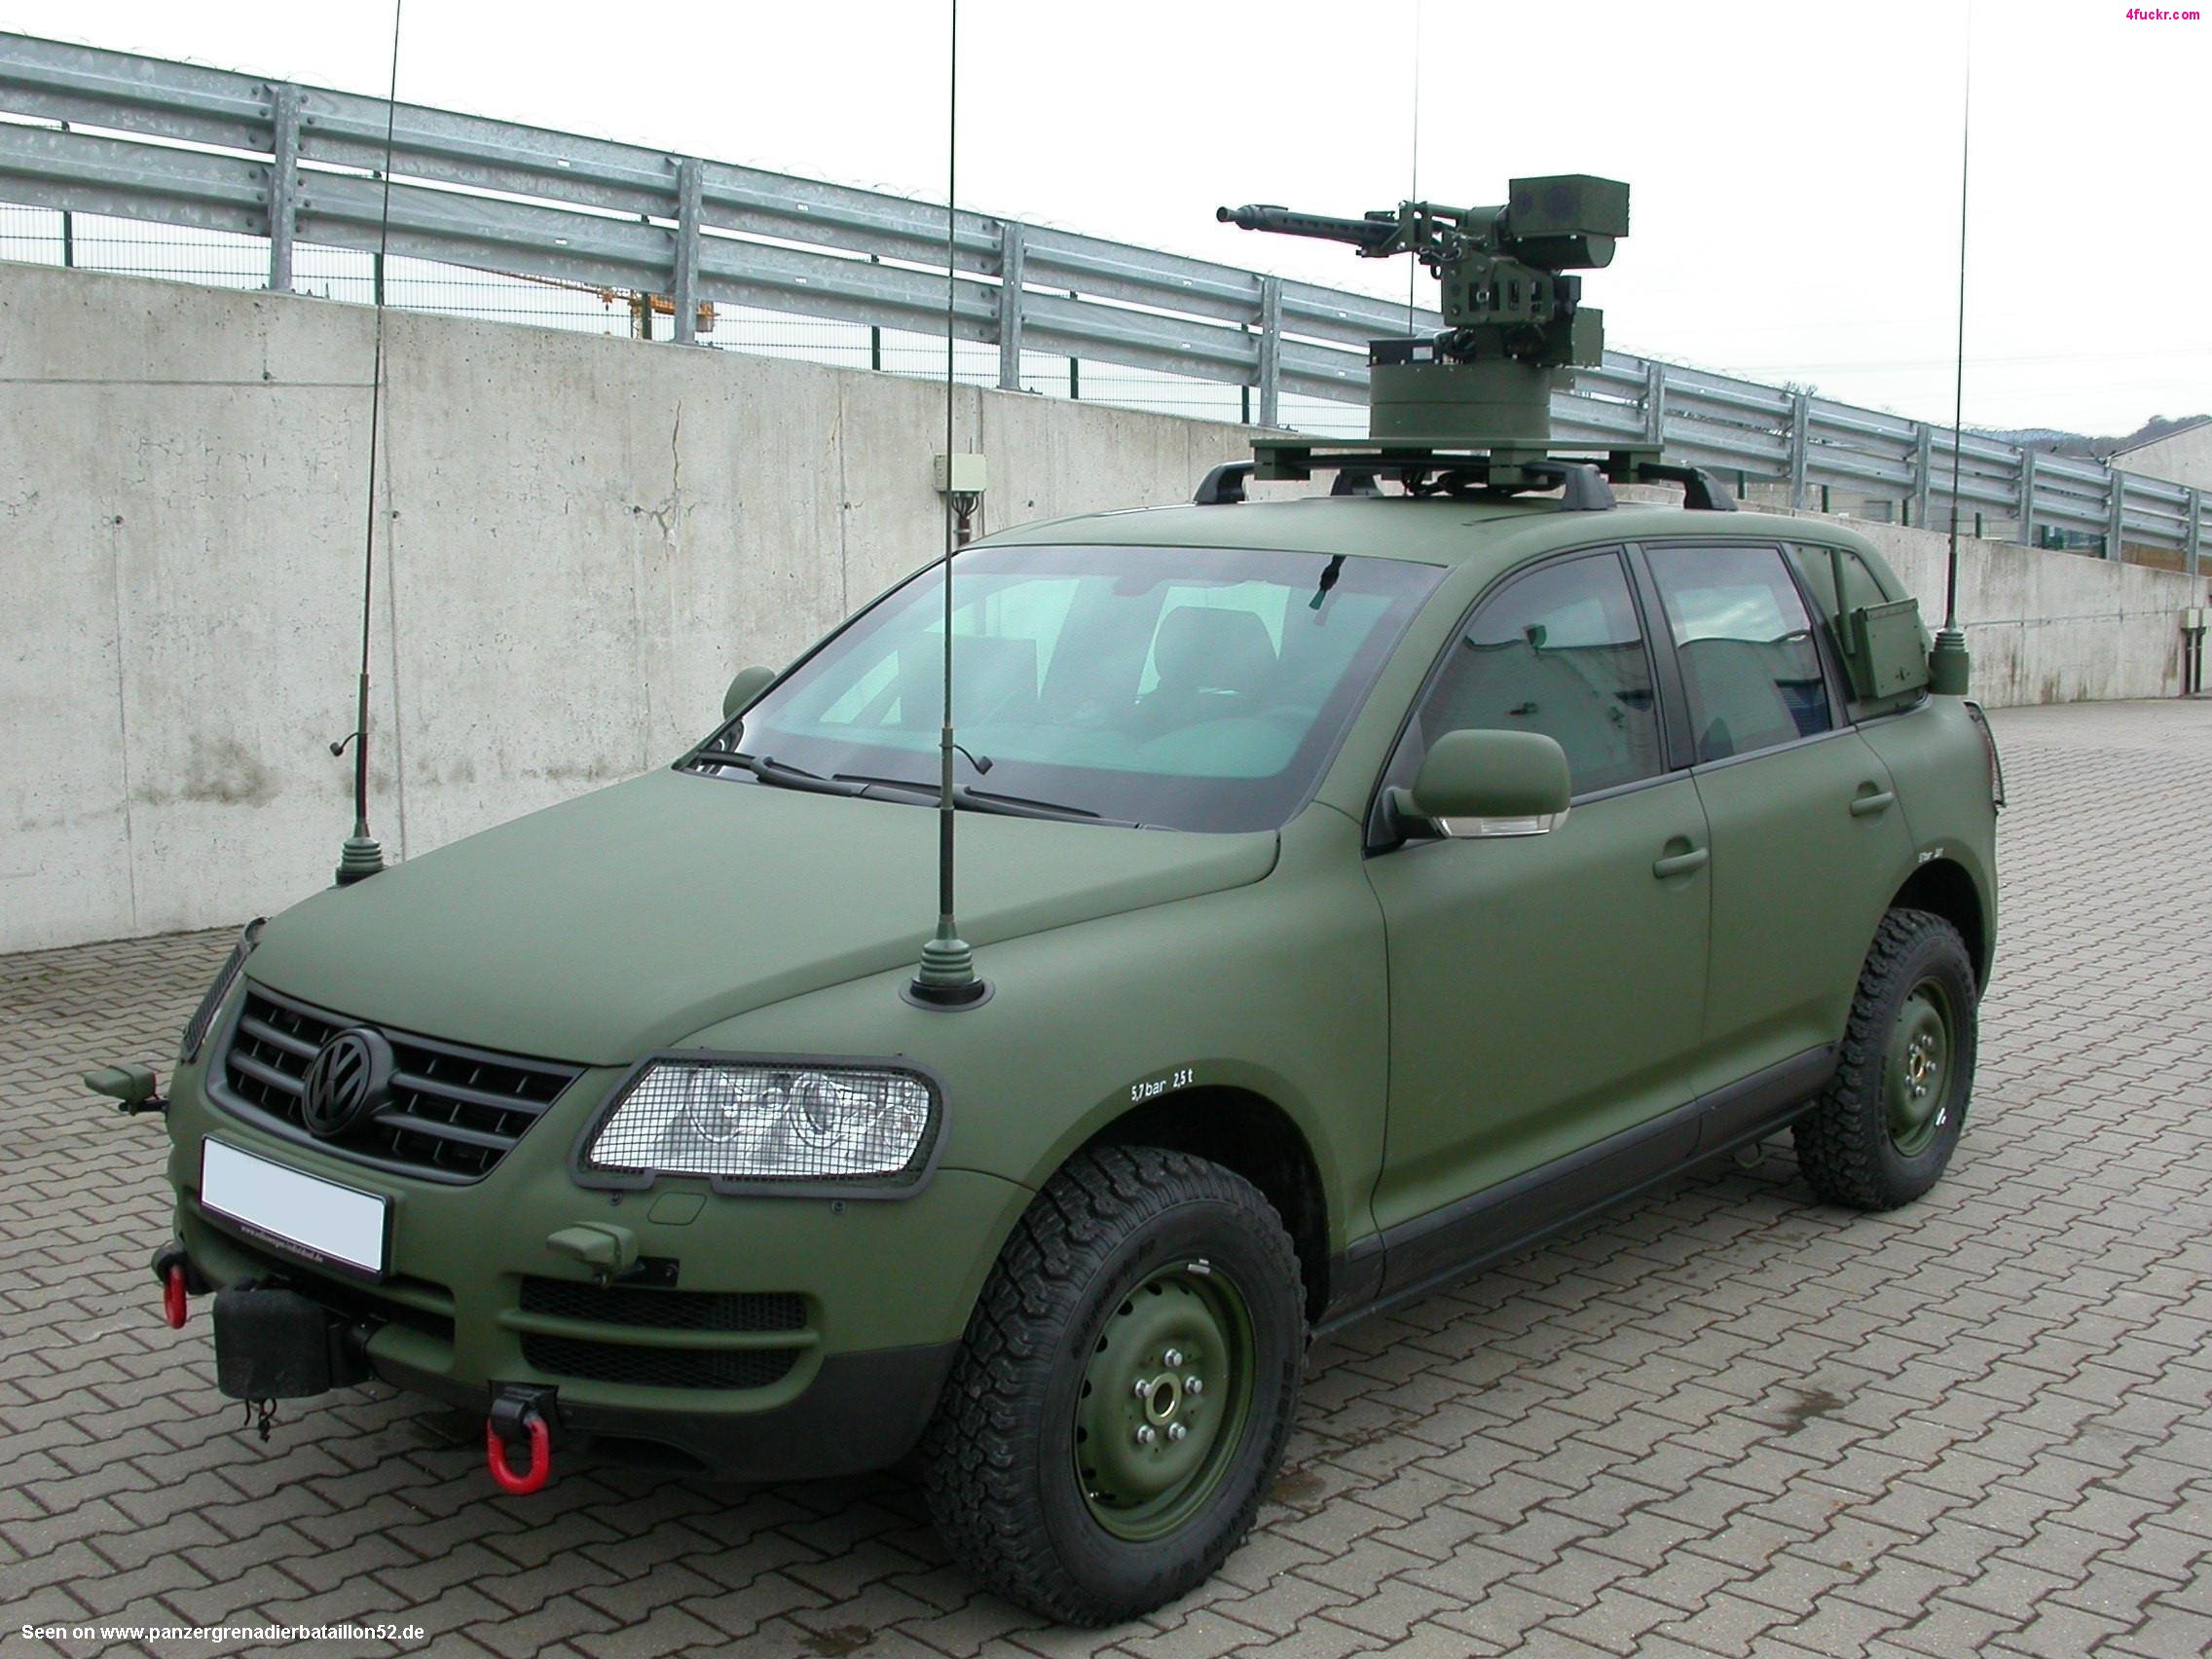 армия, военный, автомобили, Volkswagen - обои на рабочий стол